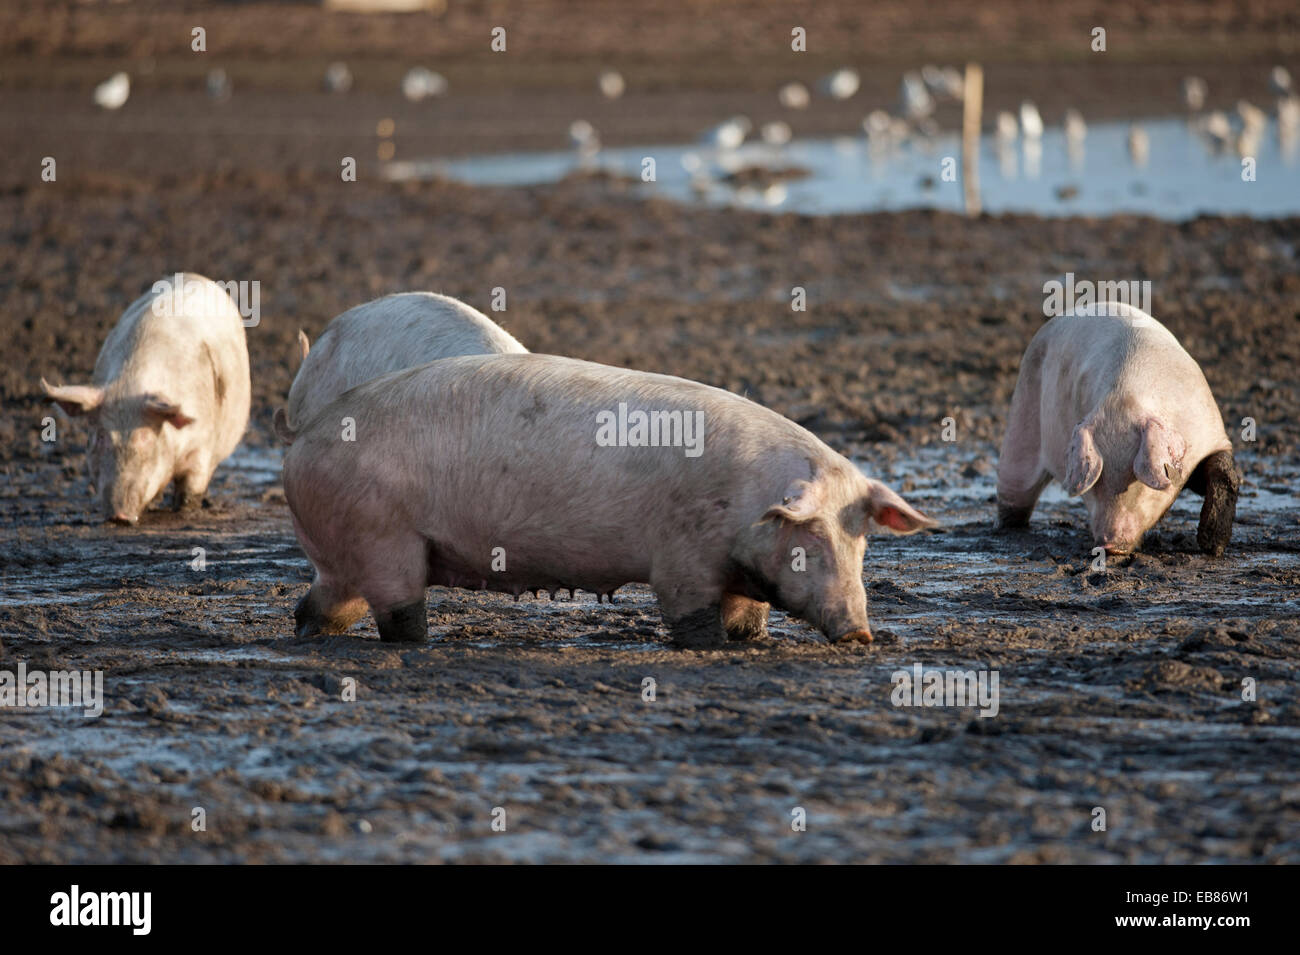 Intervalo libre de la industria de la cría de cerdos animales ir de forraje en un terreno fangoso, en Lossiemouth, Moray. Escocia. Ocs 9230. Foto de stock